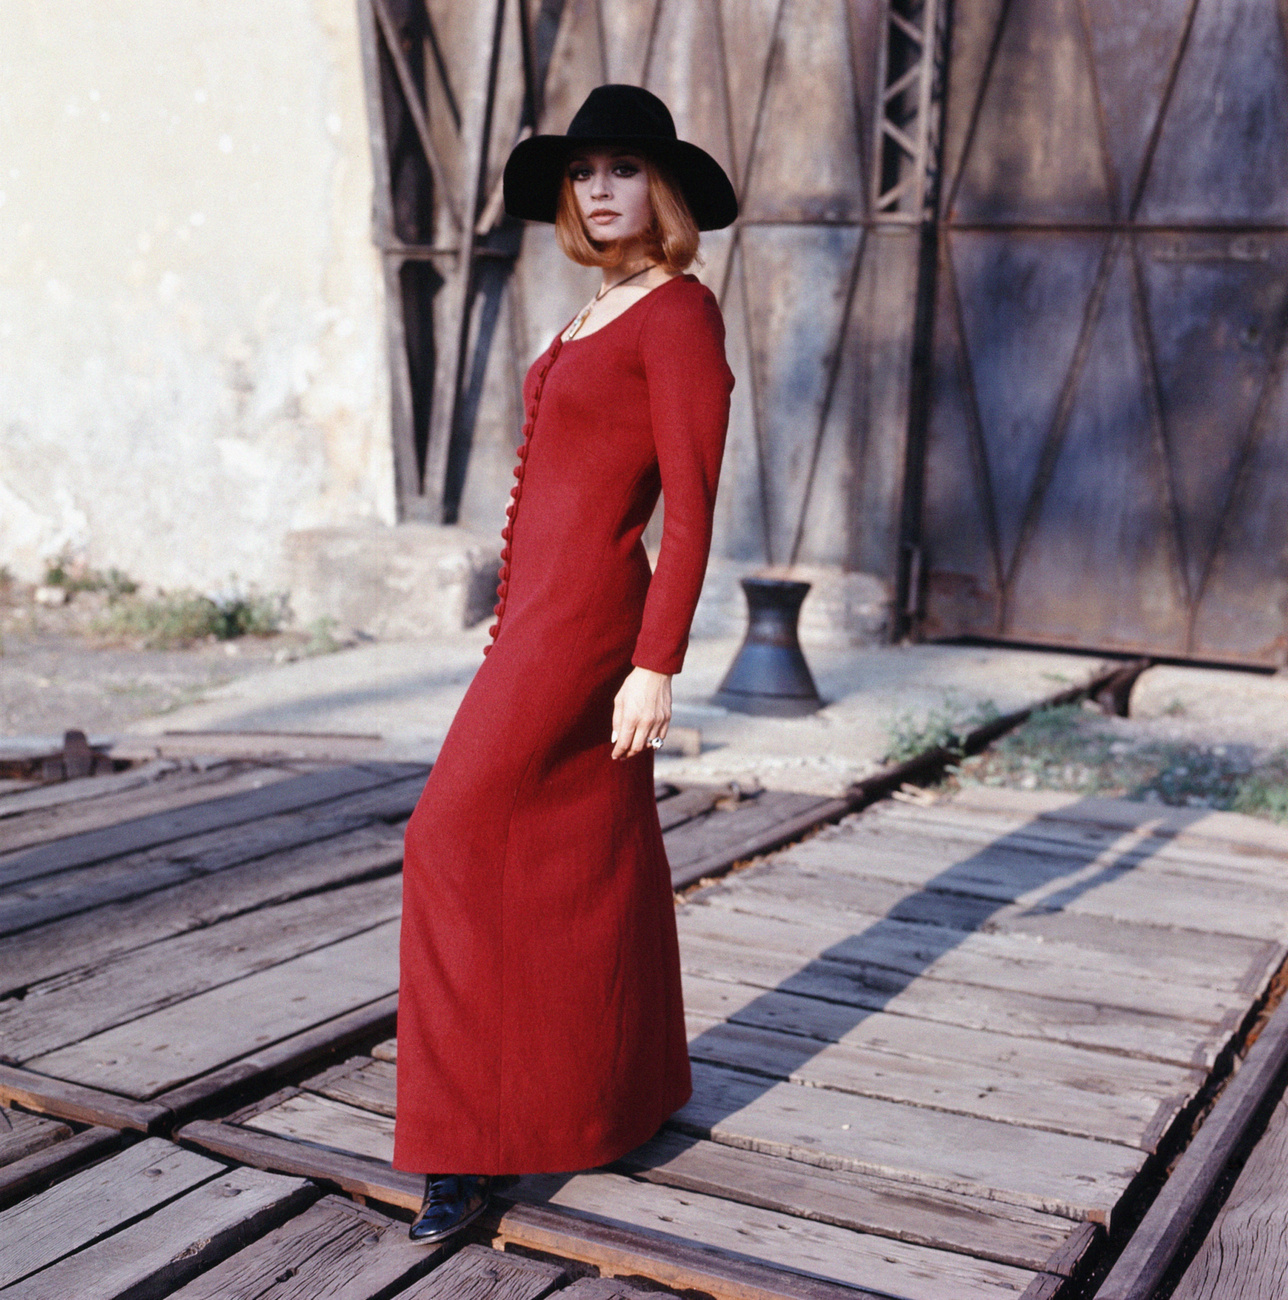 És végül, de nem utolsósorban egy fotó egy pirosruhás nőről 1944-ből. 